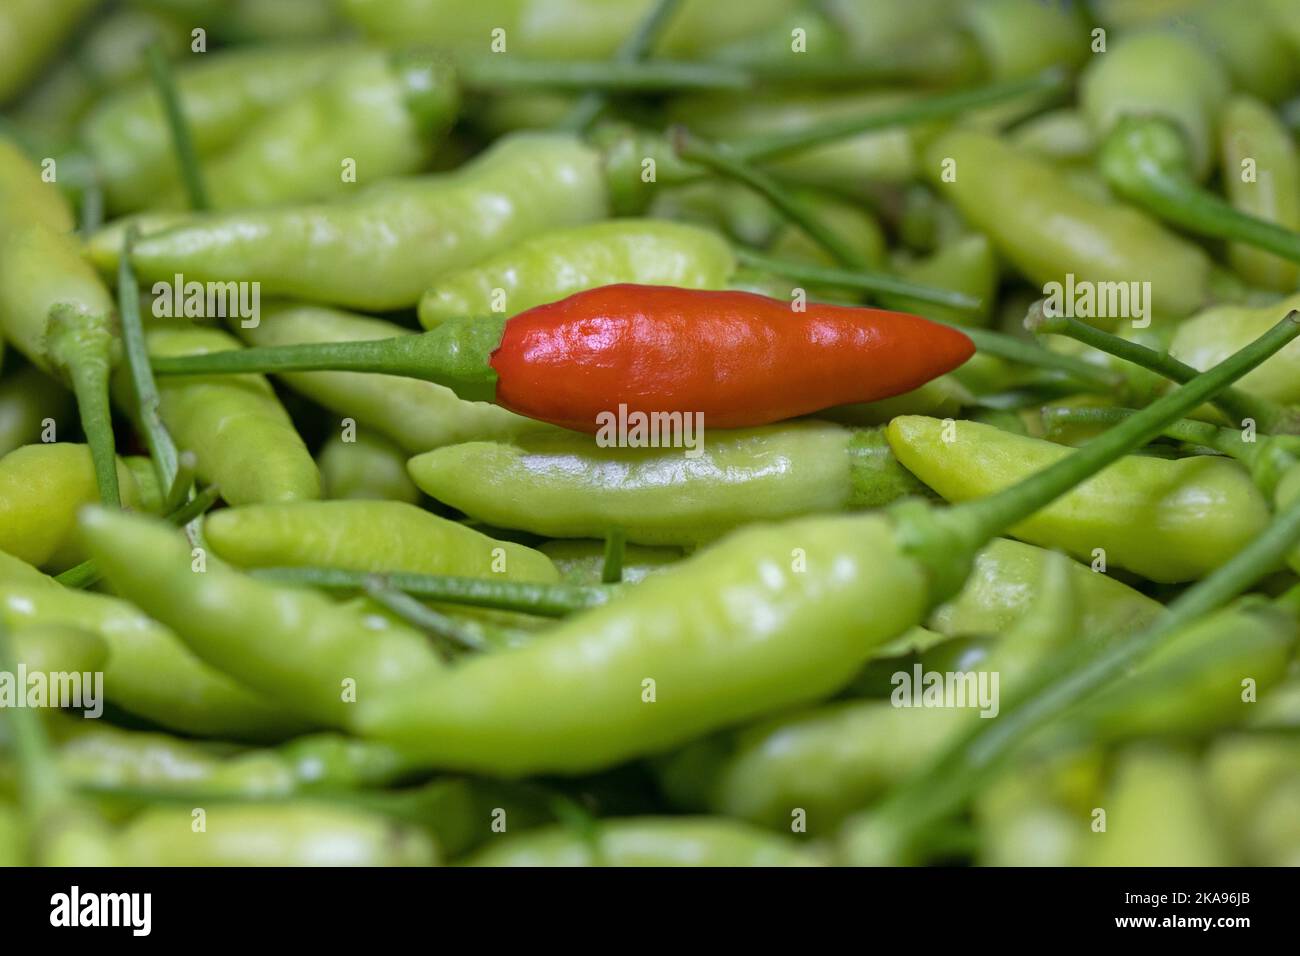 Ripe chili among unripe chillies, Hot chilis Stock Photo